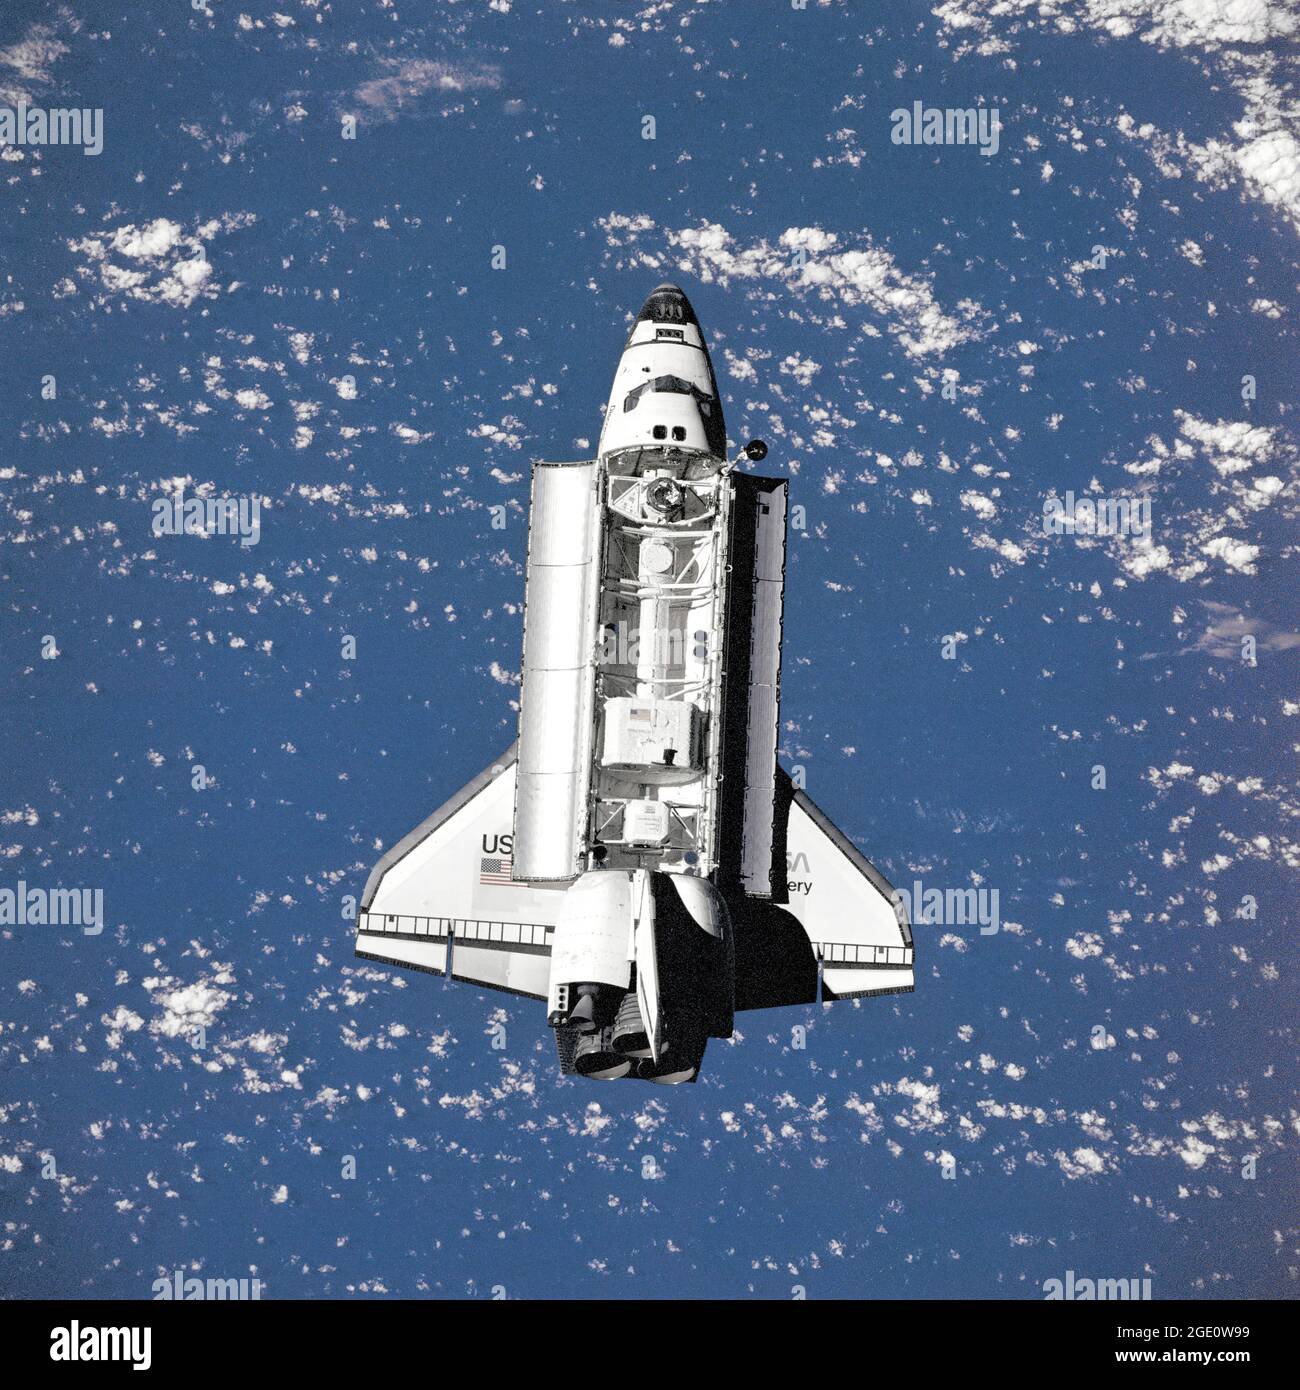 Rendezvous et approche de l'Orbiter Discovery à la station spatiale russe Mir. Le module Spacehab et la charge utile du spectromètre magnétique Alpha (AMS) sont visibles dans la baie de charge utile. Banque D'Images